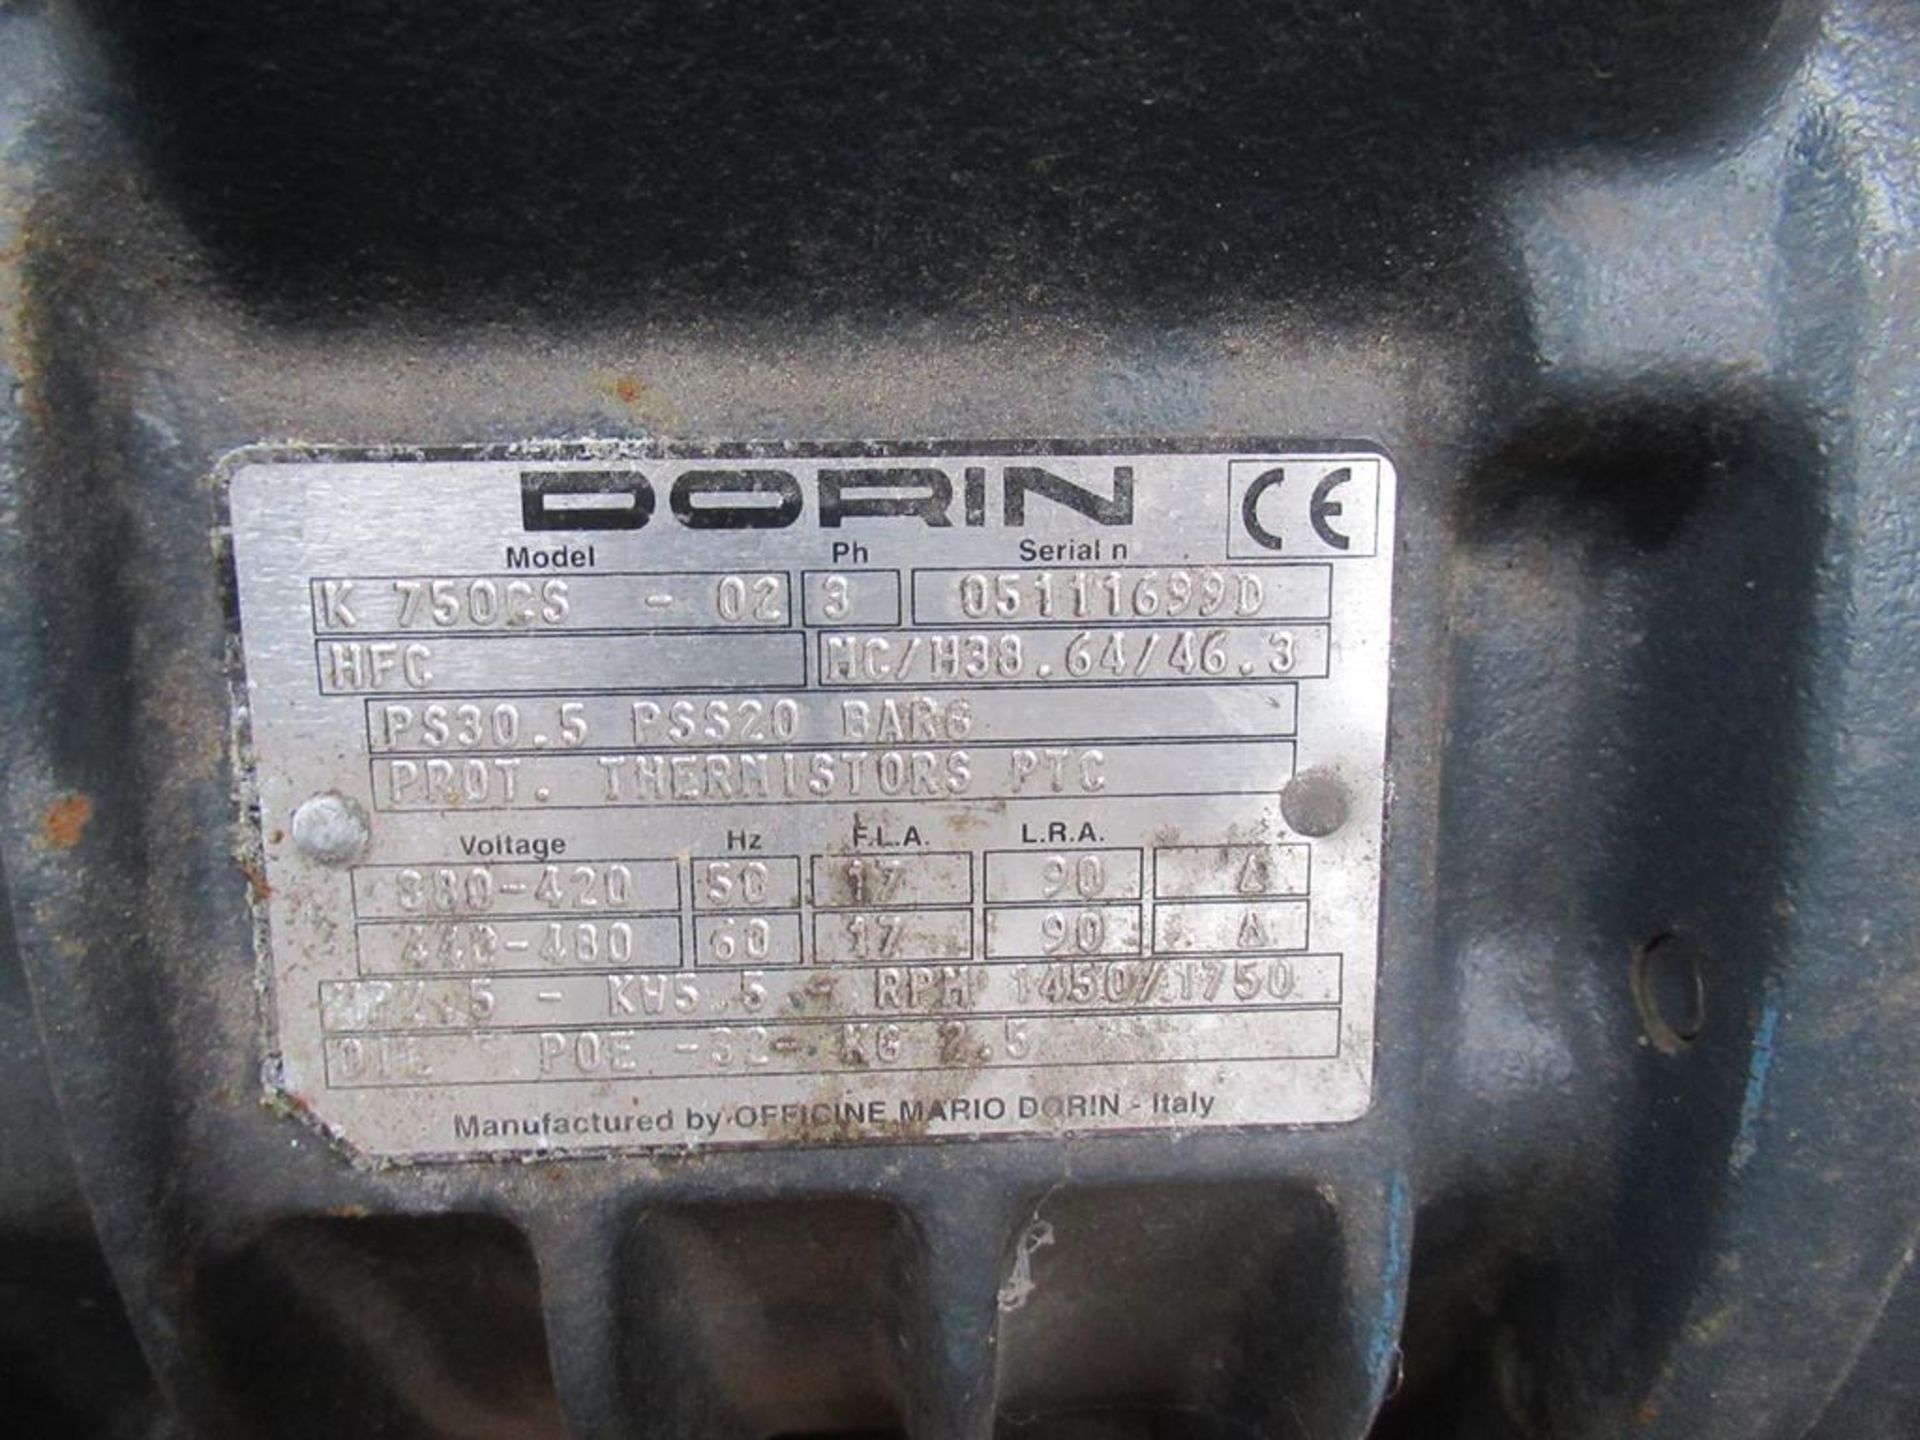 DORIN Model K750C5-02 Refrigeration Compressor - Image 2 of 2